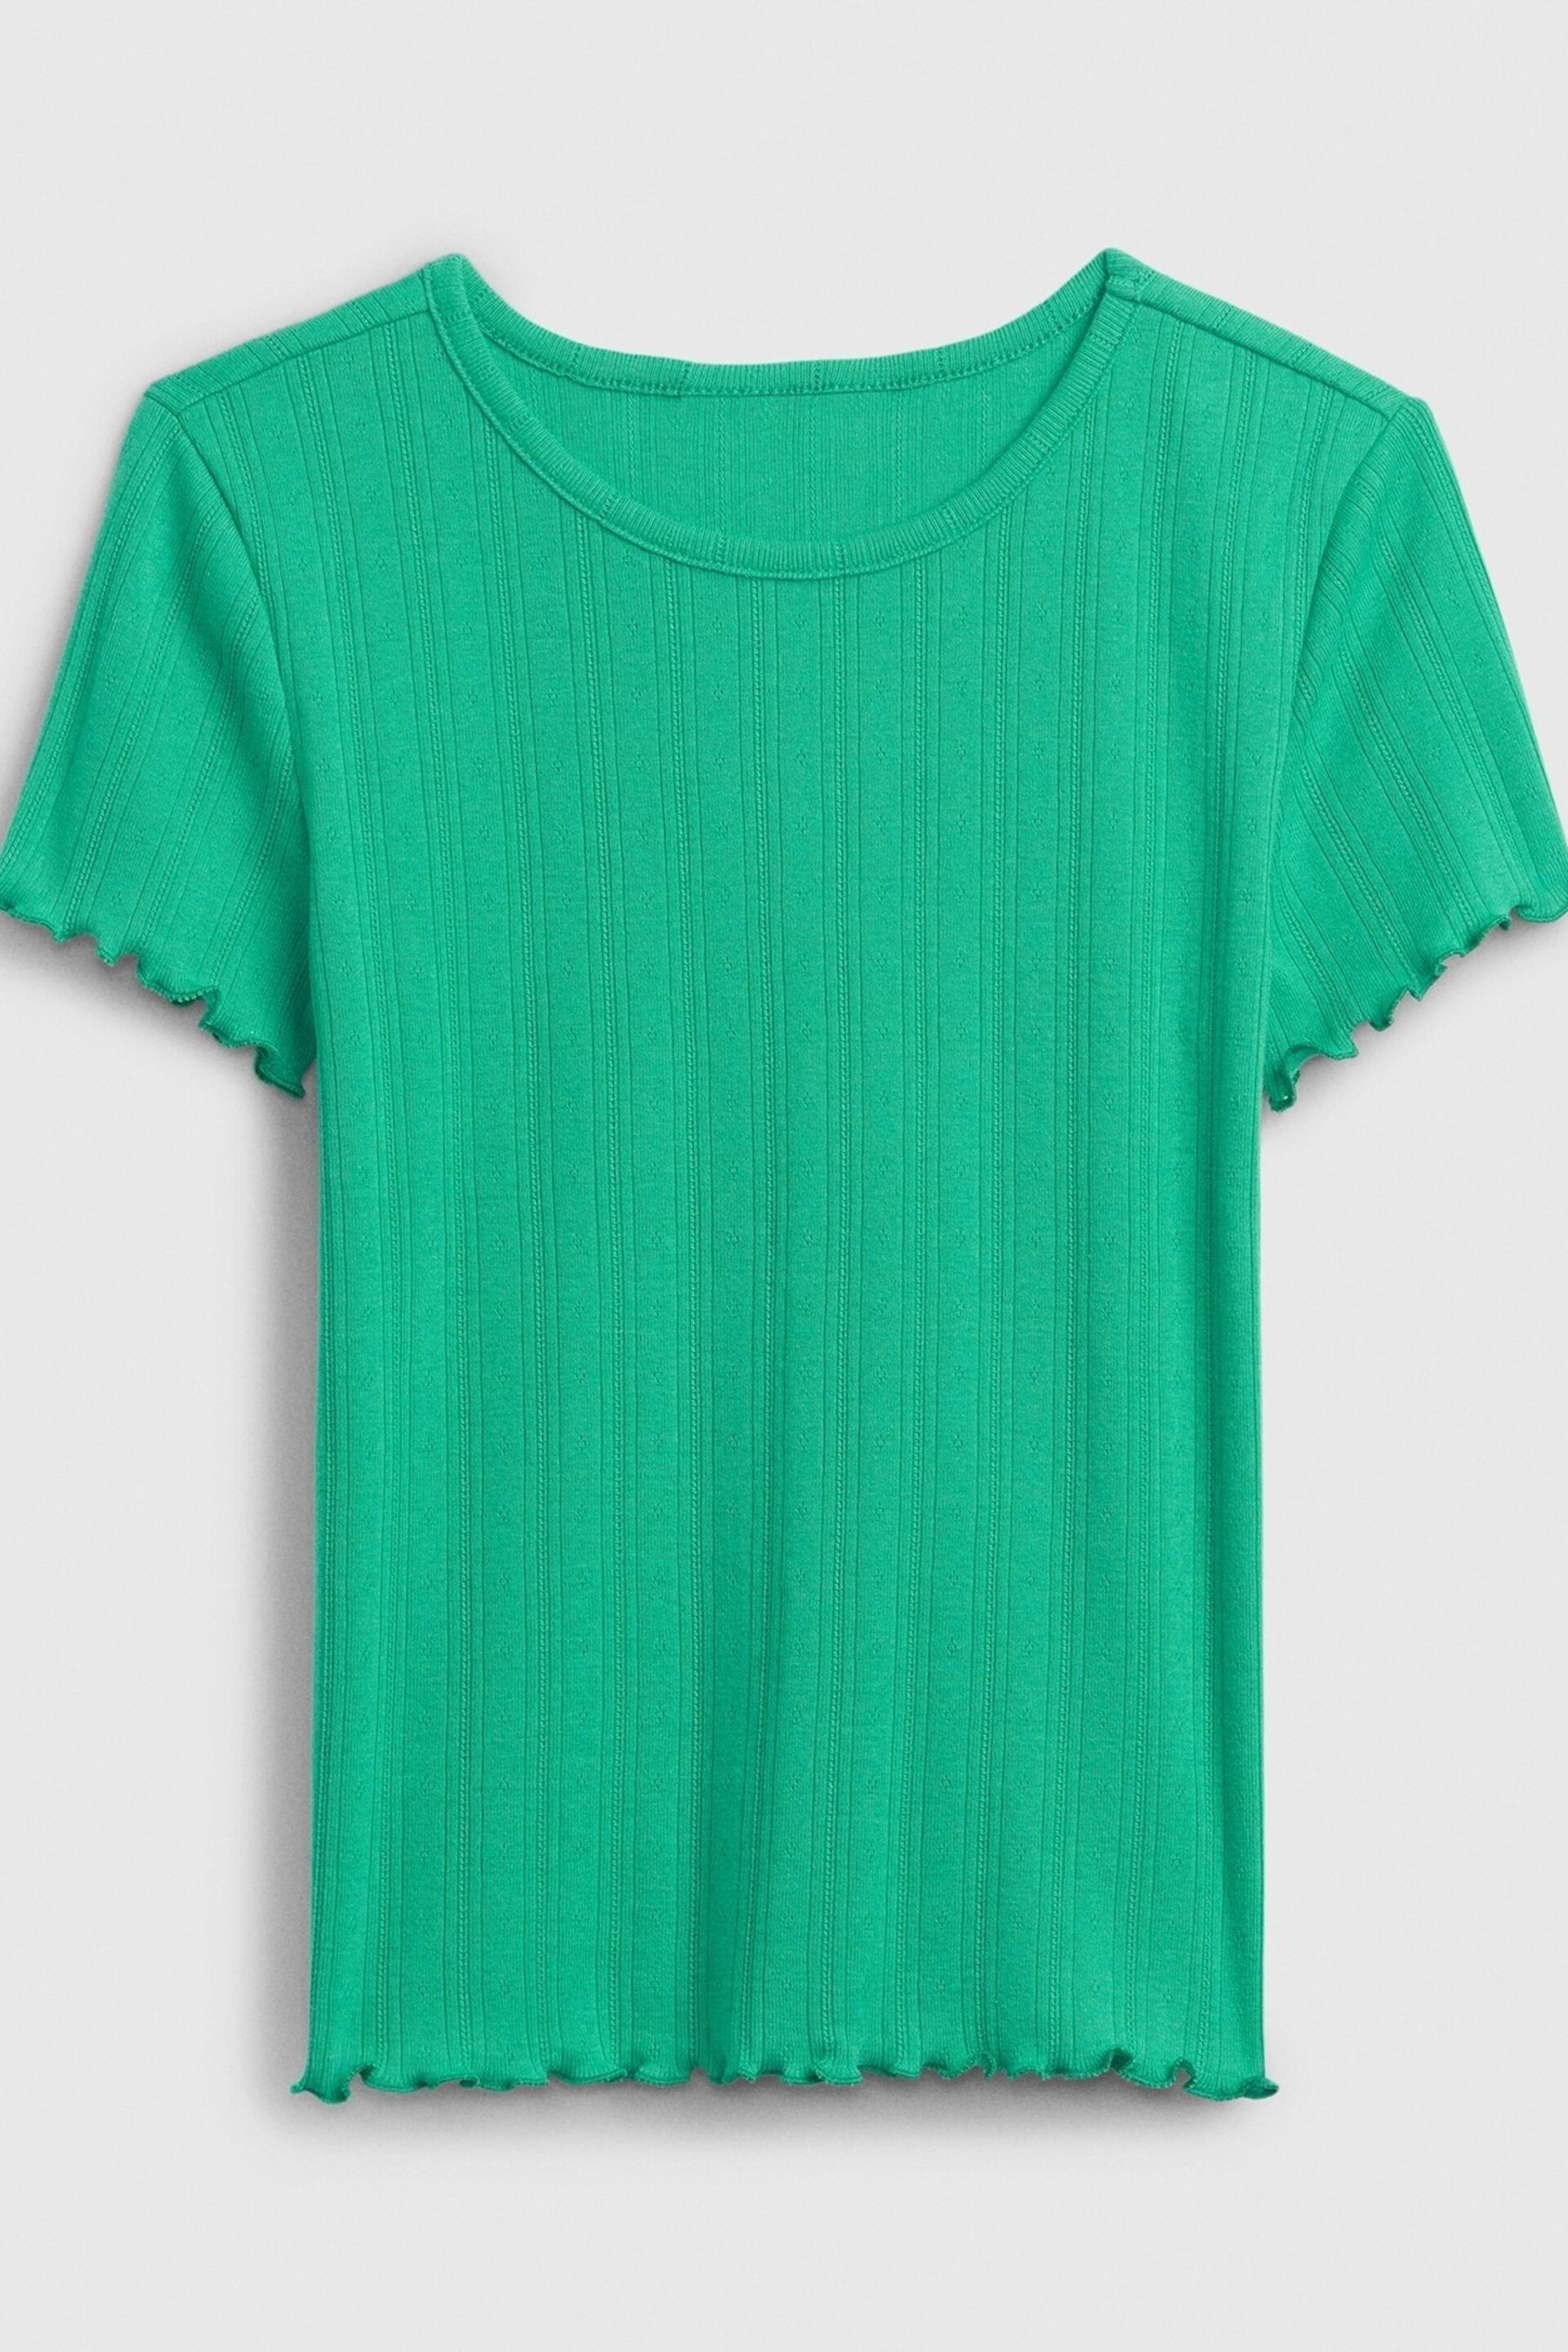 Gap Green Pointelle Lettuce Short Sleeve Crew Neck T-Shirt (4-13yrs) - Image 1 of 1